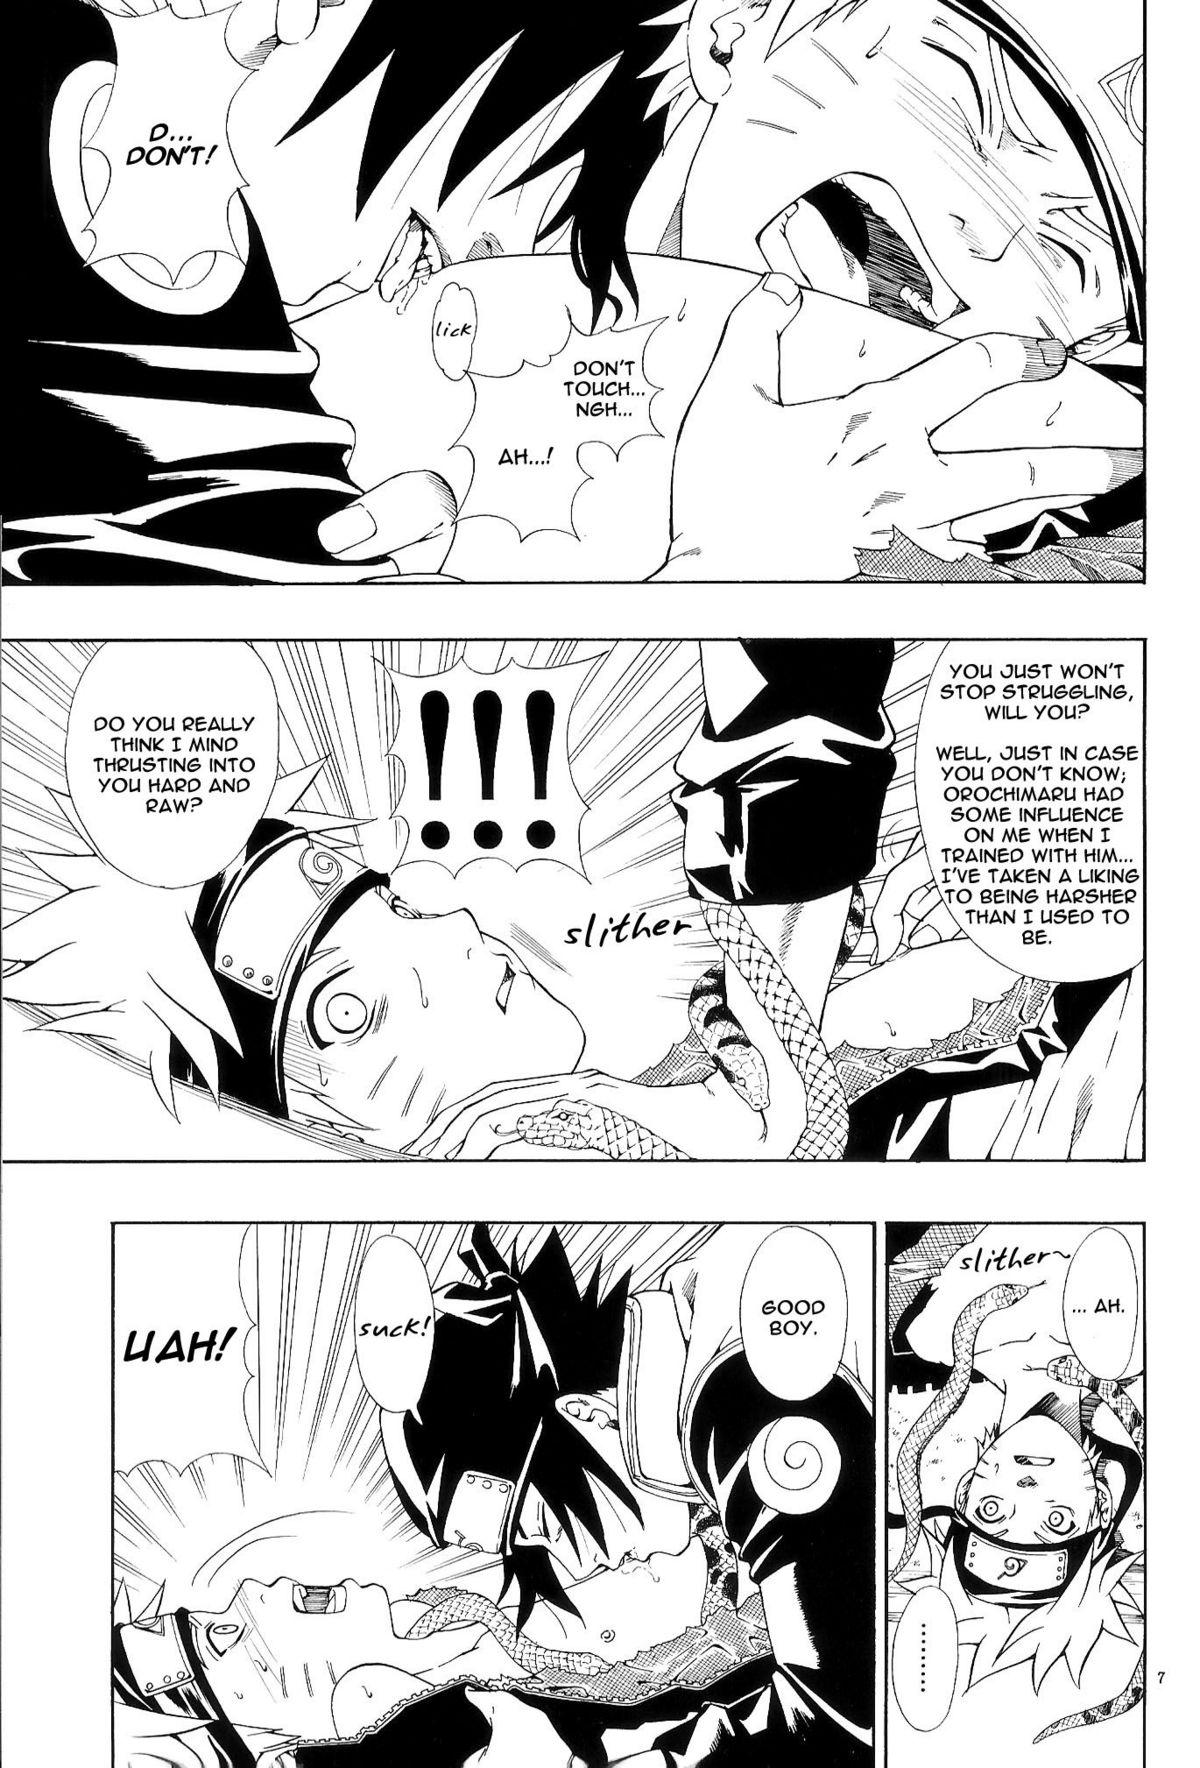 Story ERO ERO²: Volume 1.5 (NARUTO) [Sasuke X Naruto] YAOI -ENG- - Naruto Jockstrap - Page 6